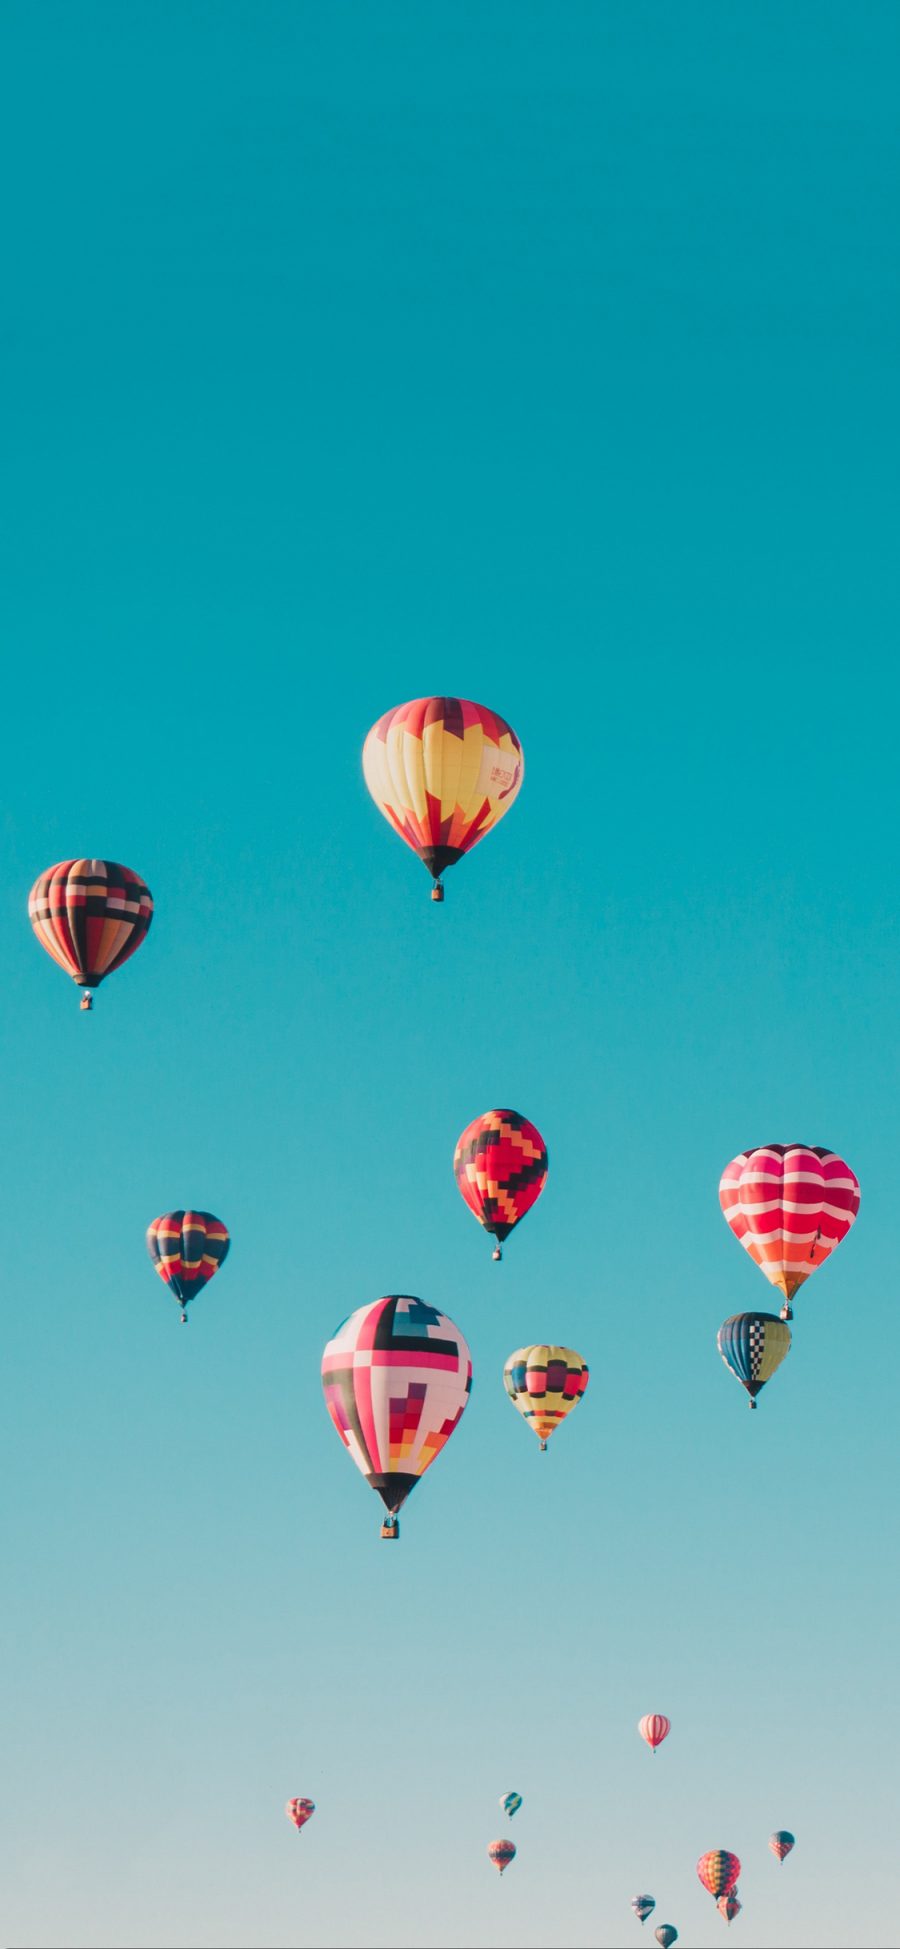 [2436×1125]热气球 飞行 天空 色彩 苹果手机壁纸图片